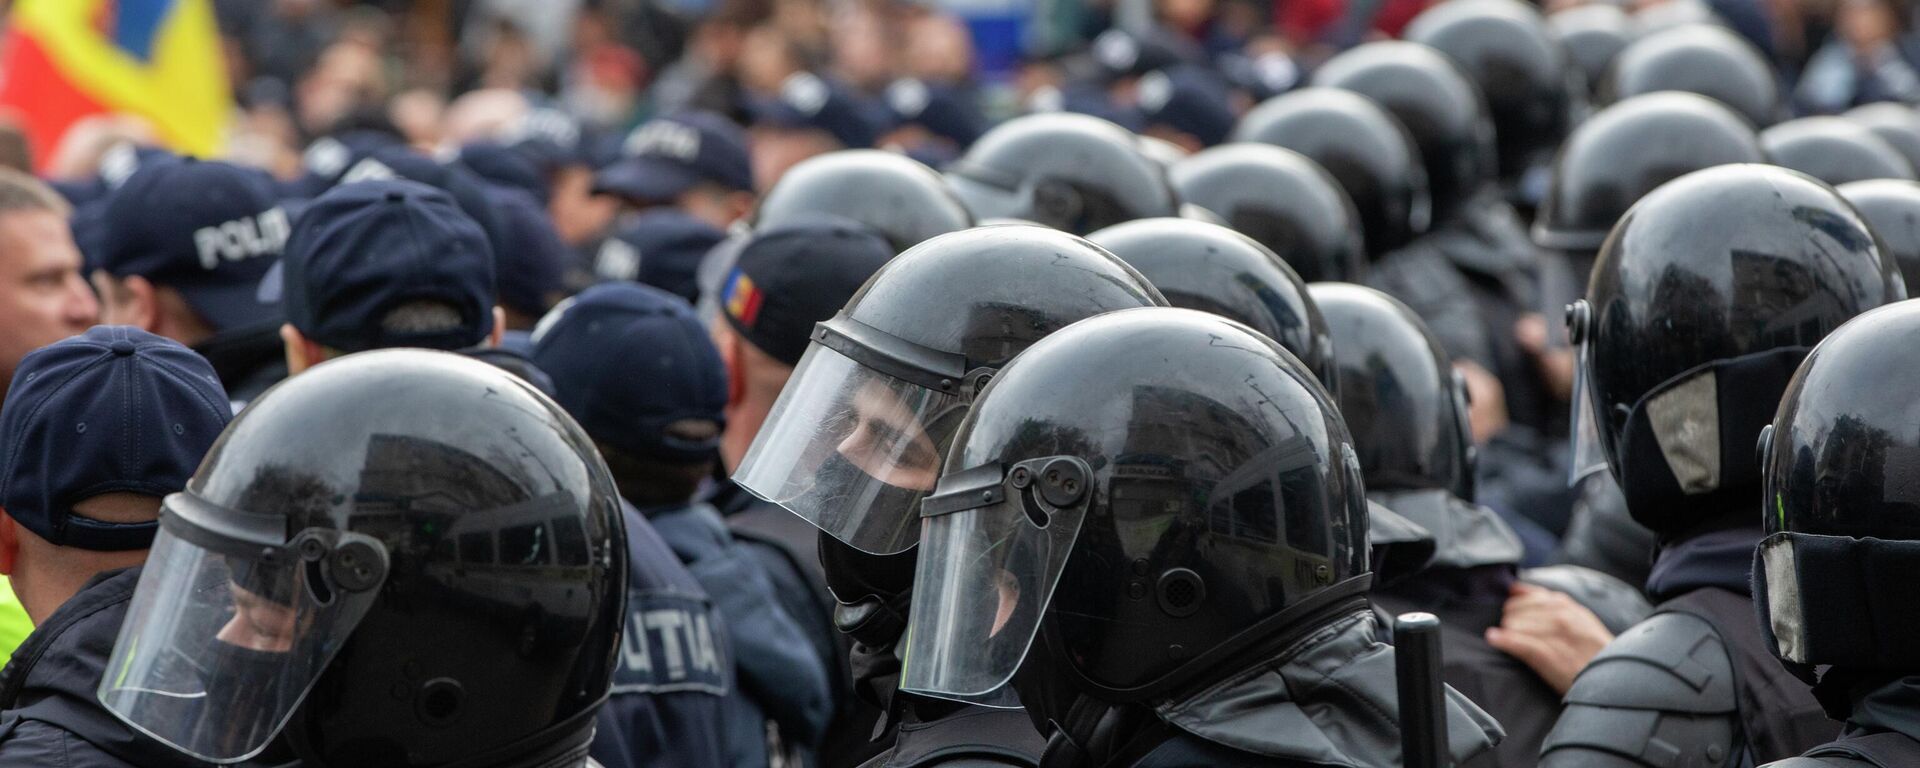 Постоять за себя: в Кишиневе на проспекте сошлись полиция и митингующие - Sputnik Молдова, 1920, 30.10.2022